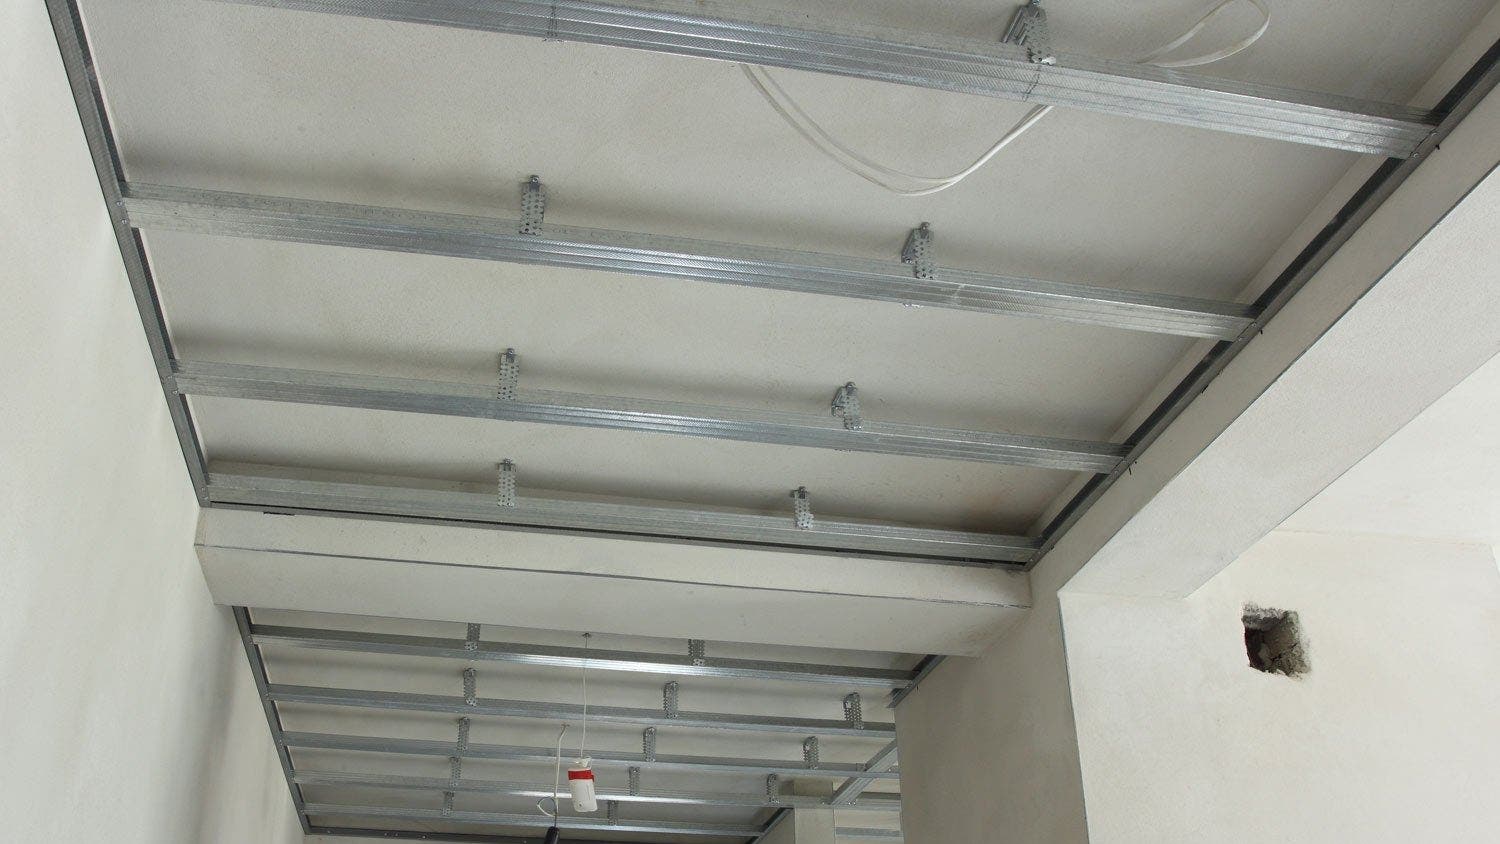 Plafond acoustique ou isolant phonique pour plafond tendu